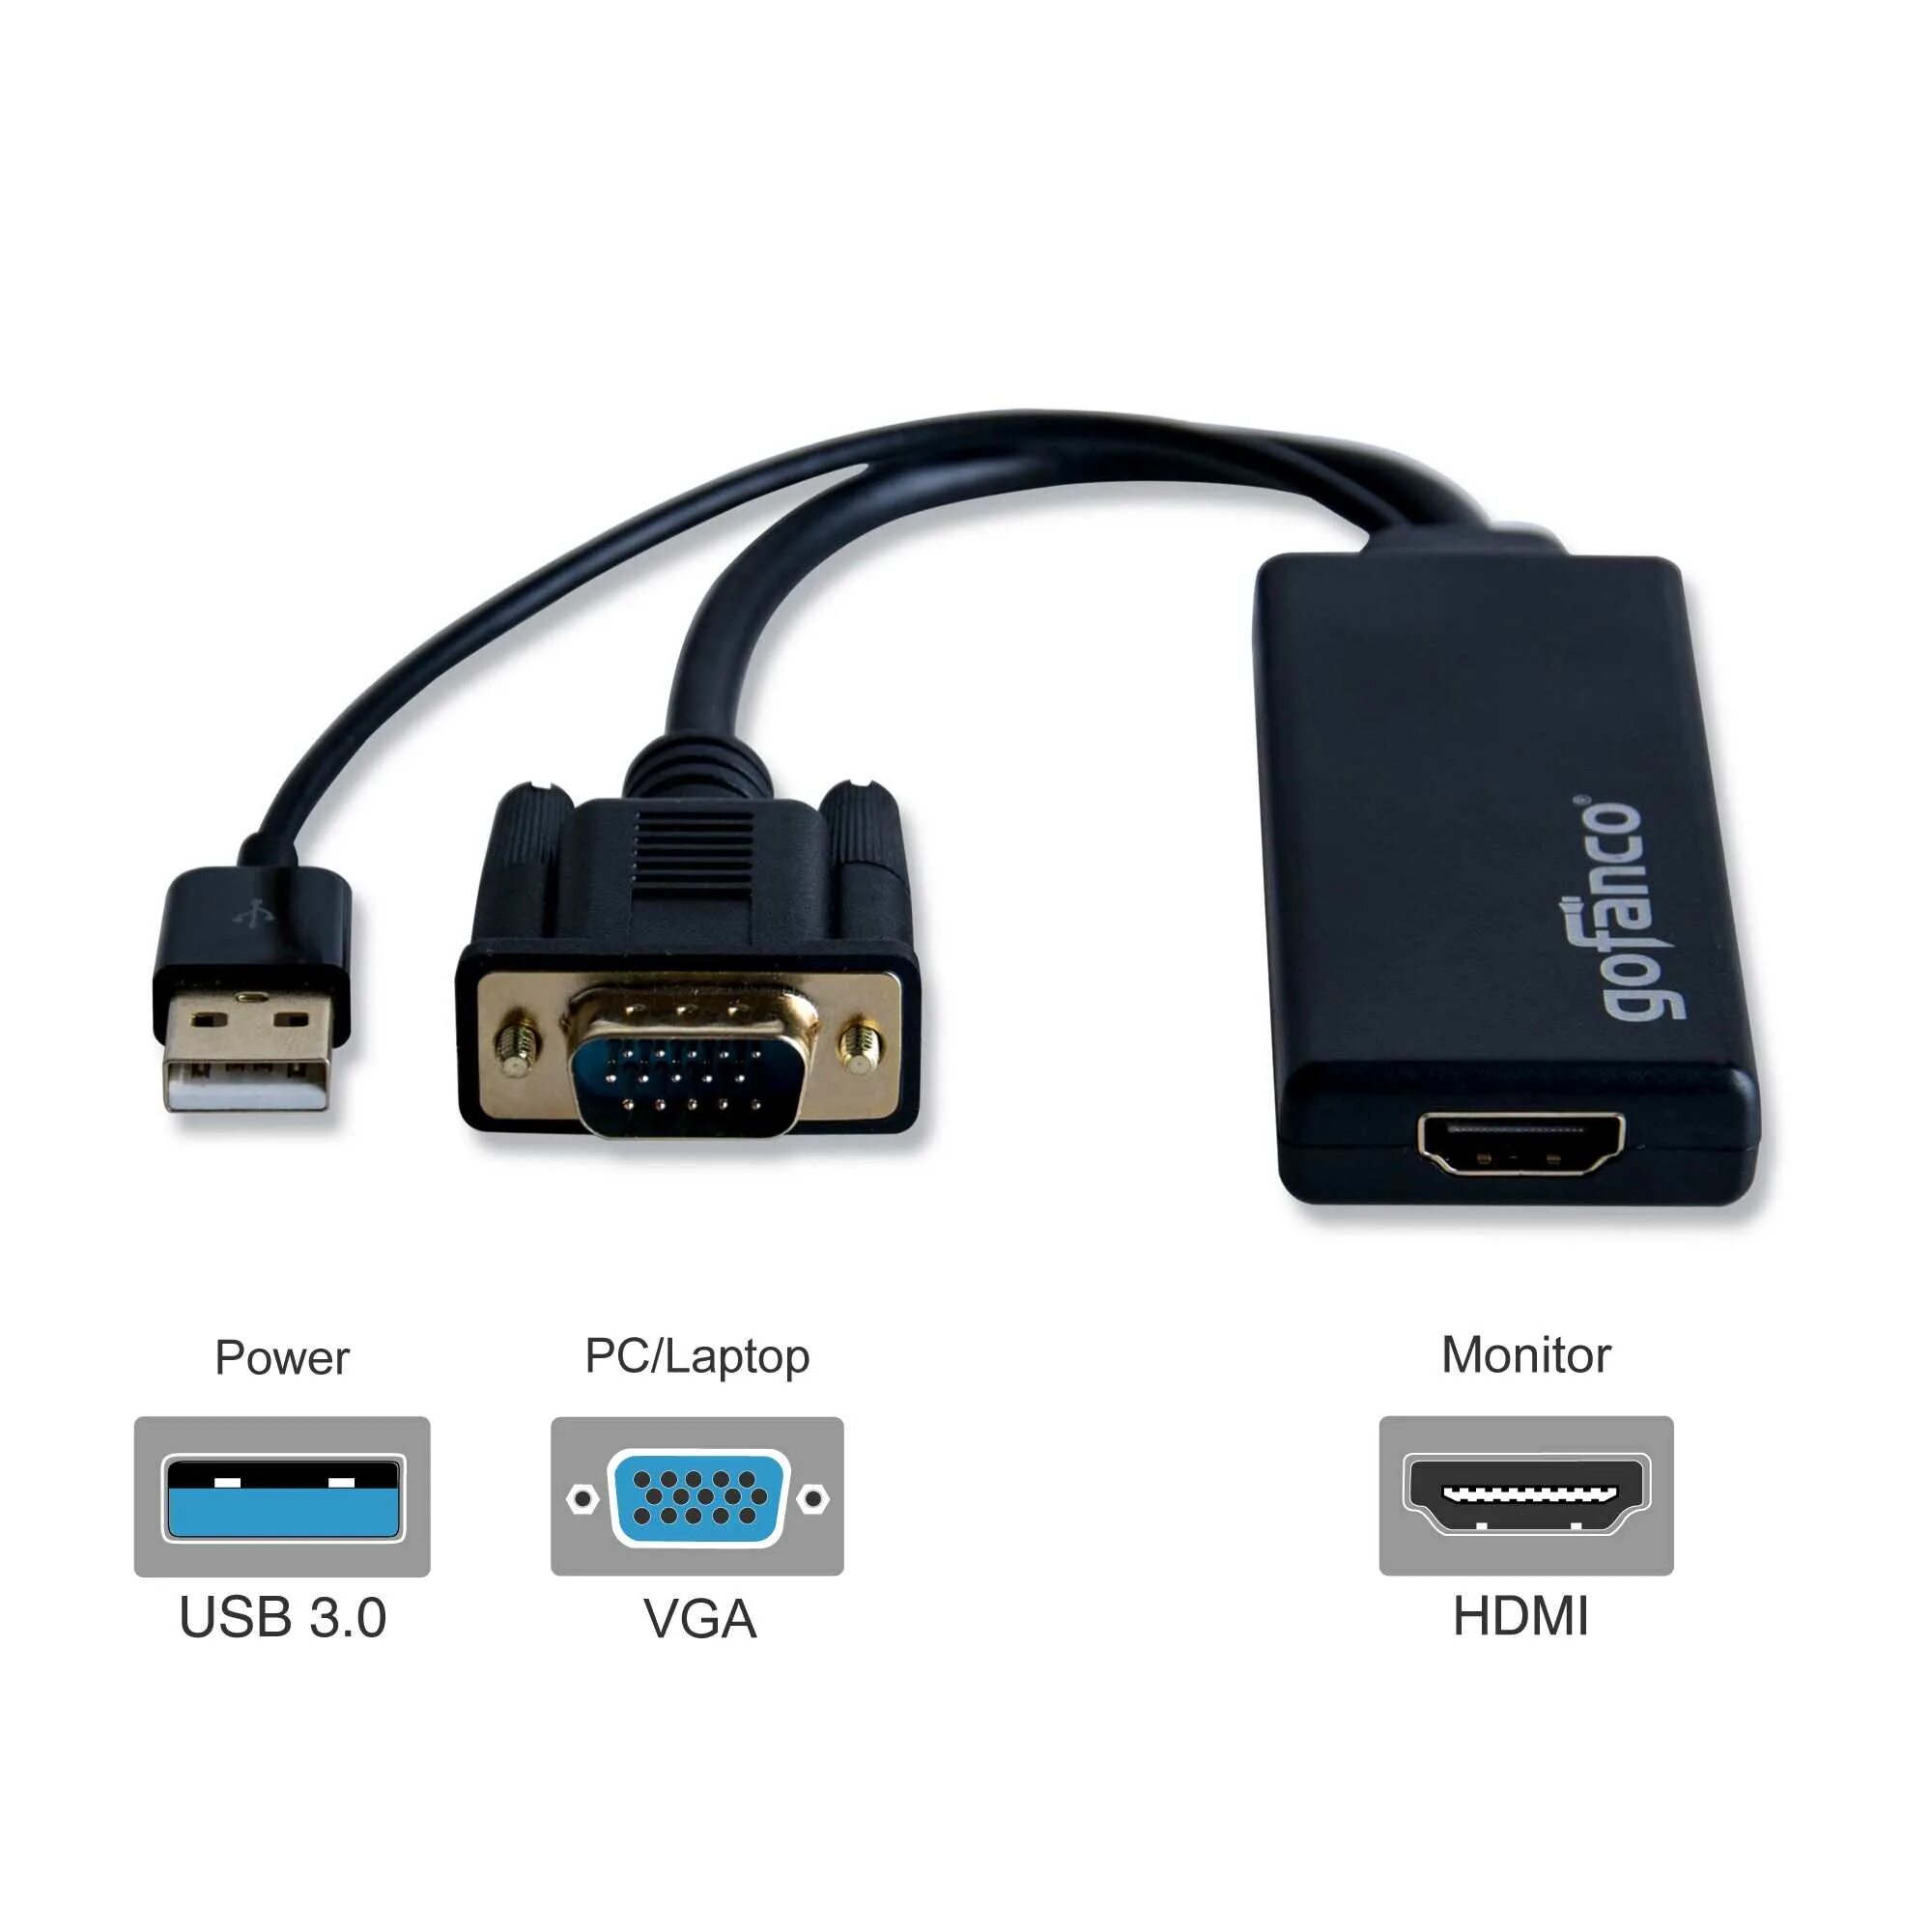 Звук через vga. Cable соединительный кабель VGA HDMI 2. Разъем VGA HDMI переходник. Vga2hdmi или hdmi2vga. Кабель-переходник VGA-HDMI-USB (С аудиовыходом 3,5 мм).